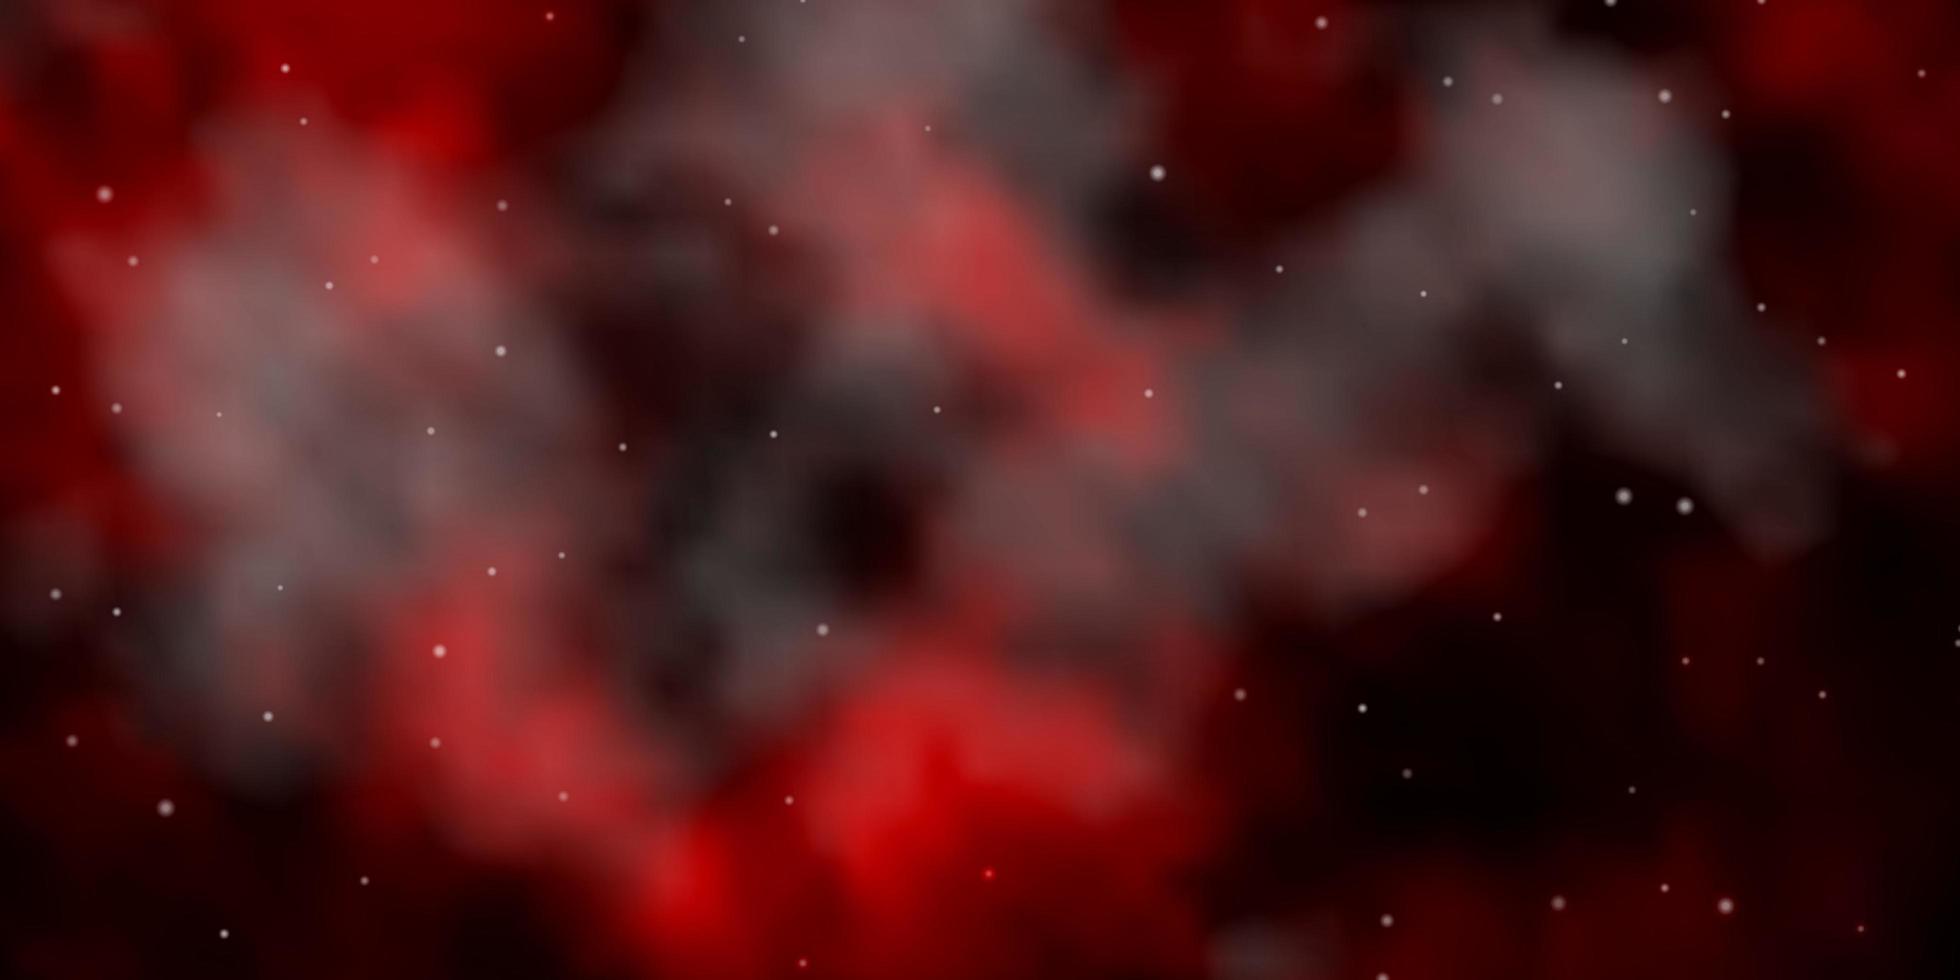 mörk röd vektormall med neonstjärnor färgglad illustration med abstrakt lutningsstjärnor design för ditt företags marknadsföring vektor